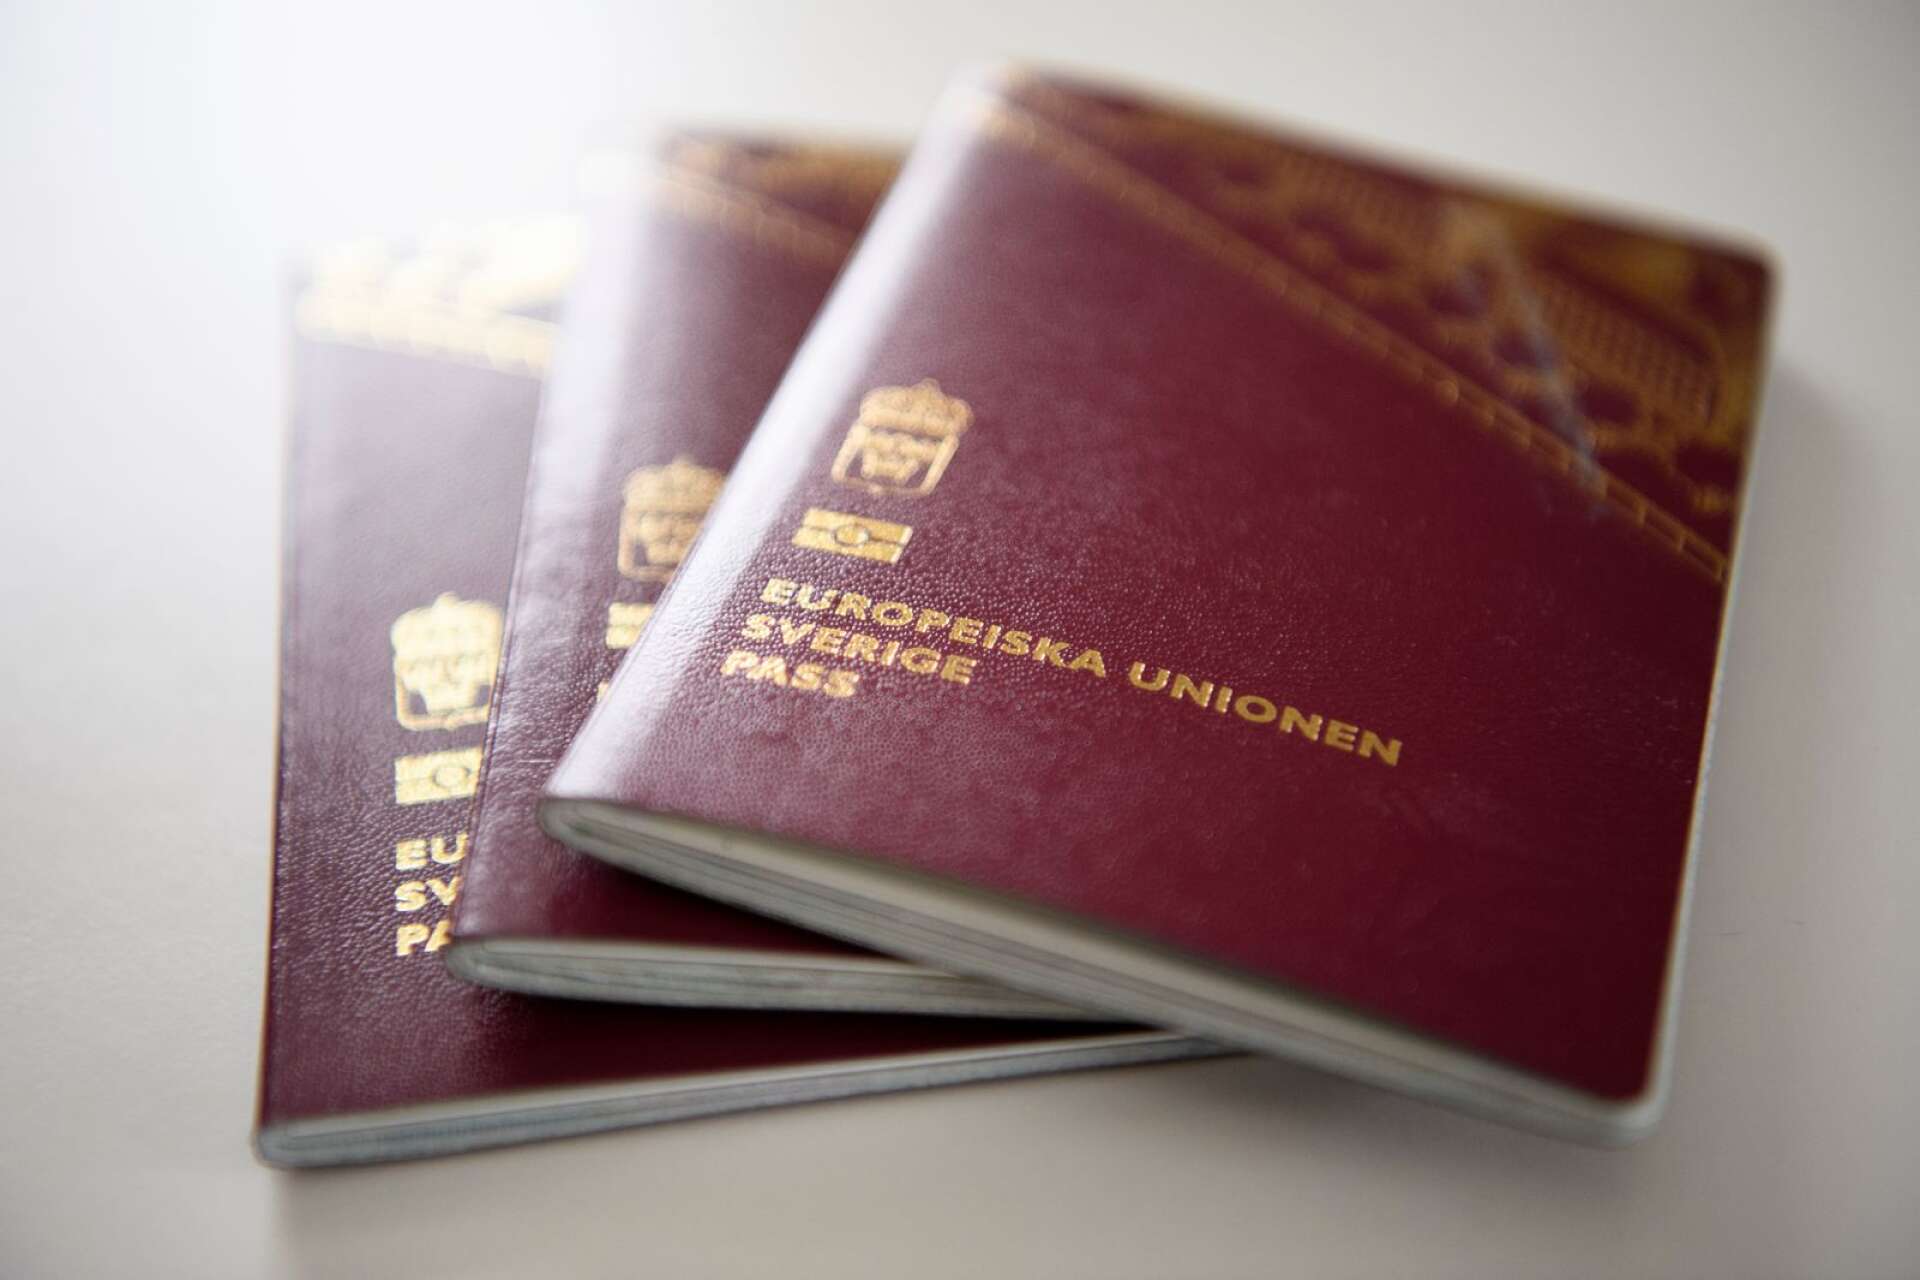 Idag behöver man inte vänta speciellt länge på att få ansöka om nytt pass. Däremot är väntetiden cirka två månader för att få det nytillverkade passet.